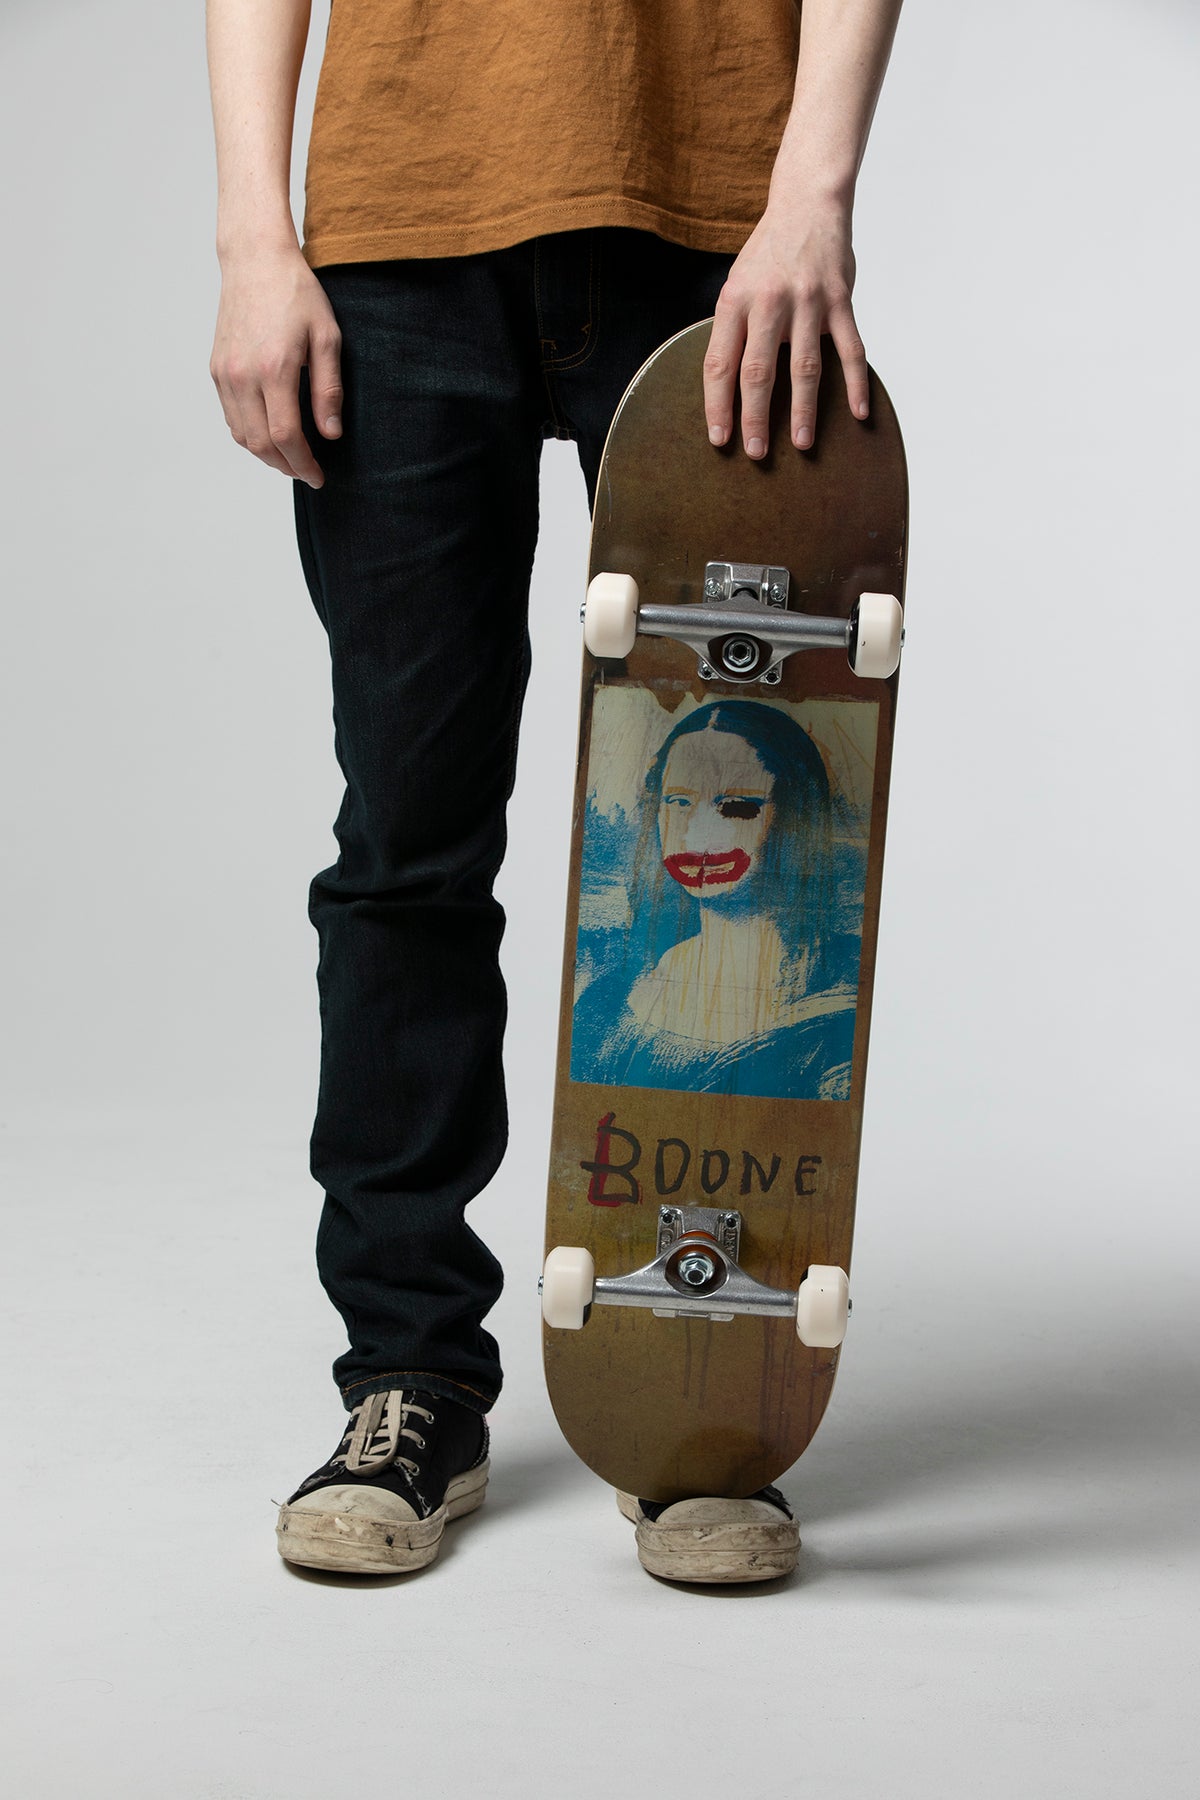 Basquiat "Boone" Skateboard